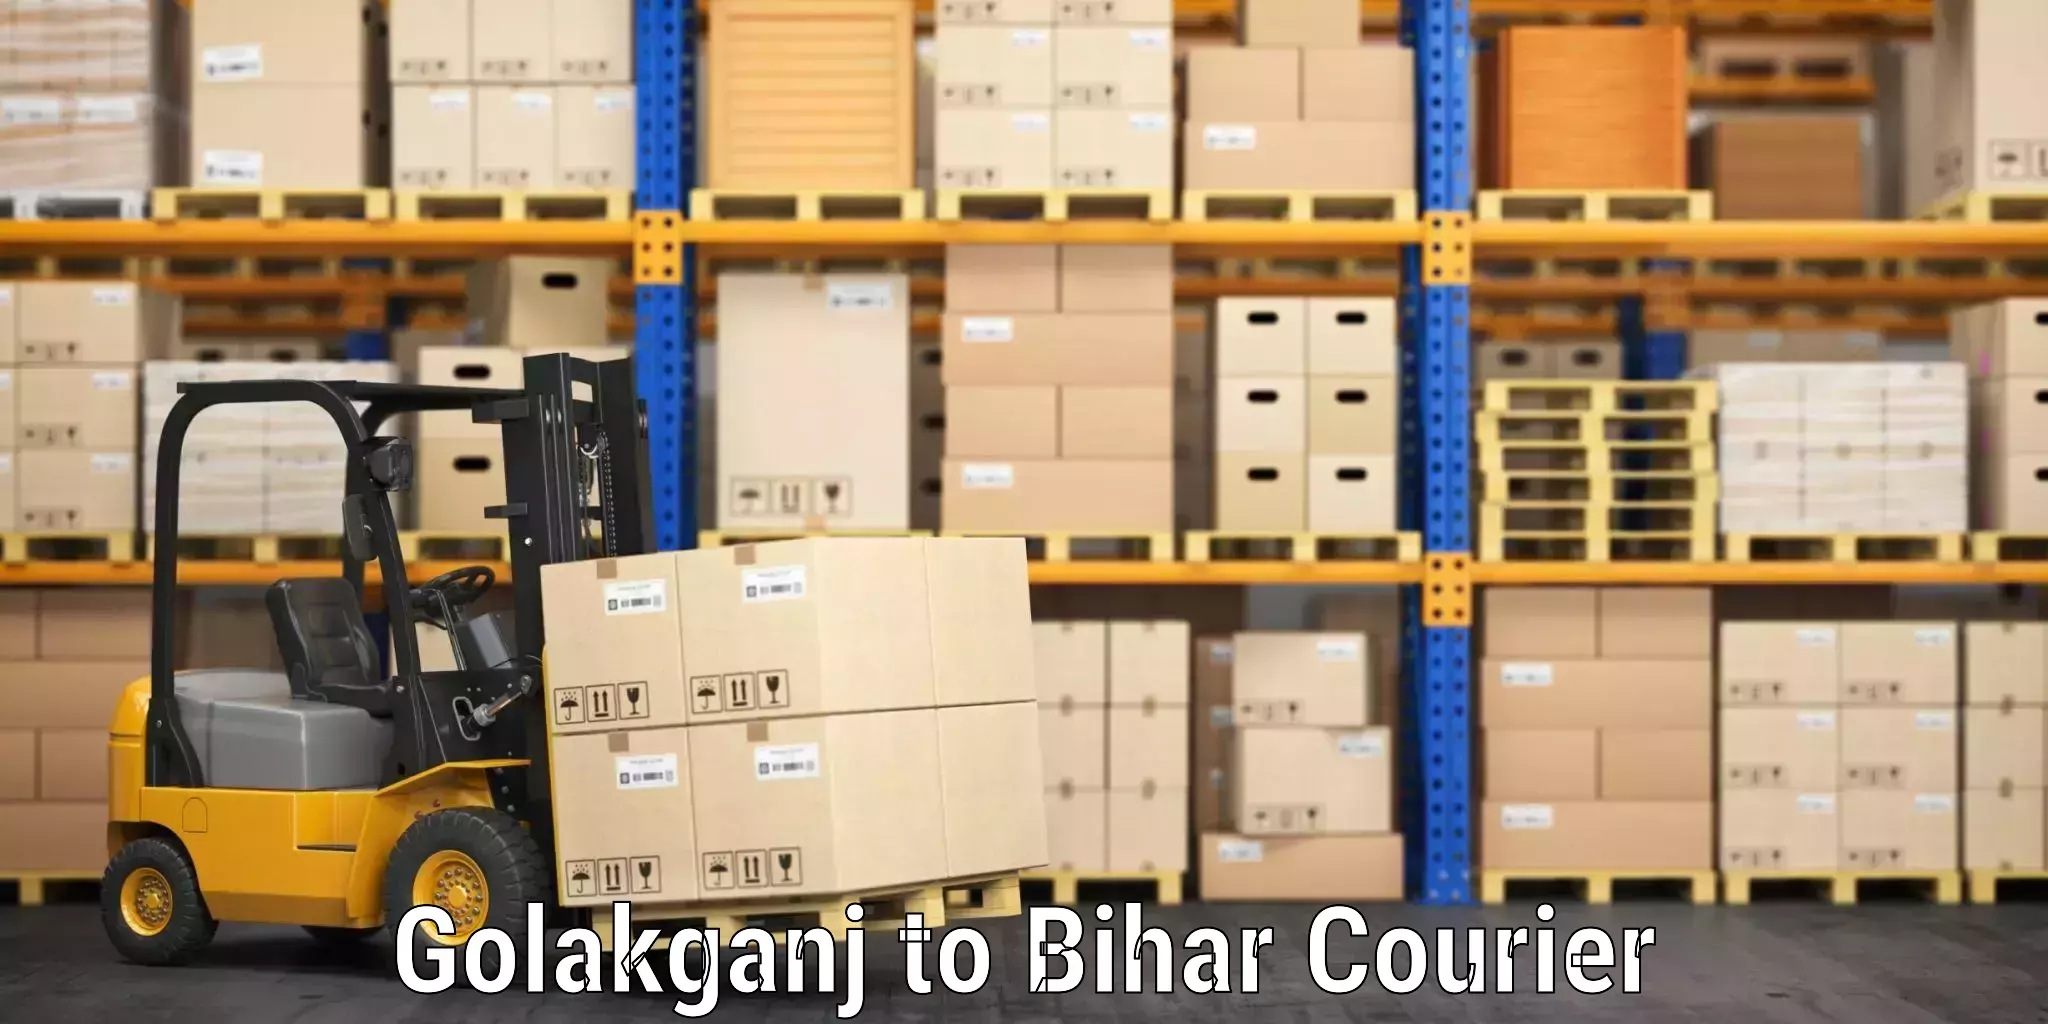 Luggage shipping planner Golakganj to Gopalganj